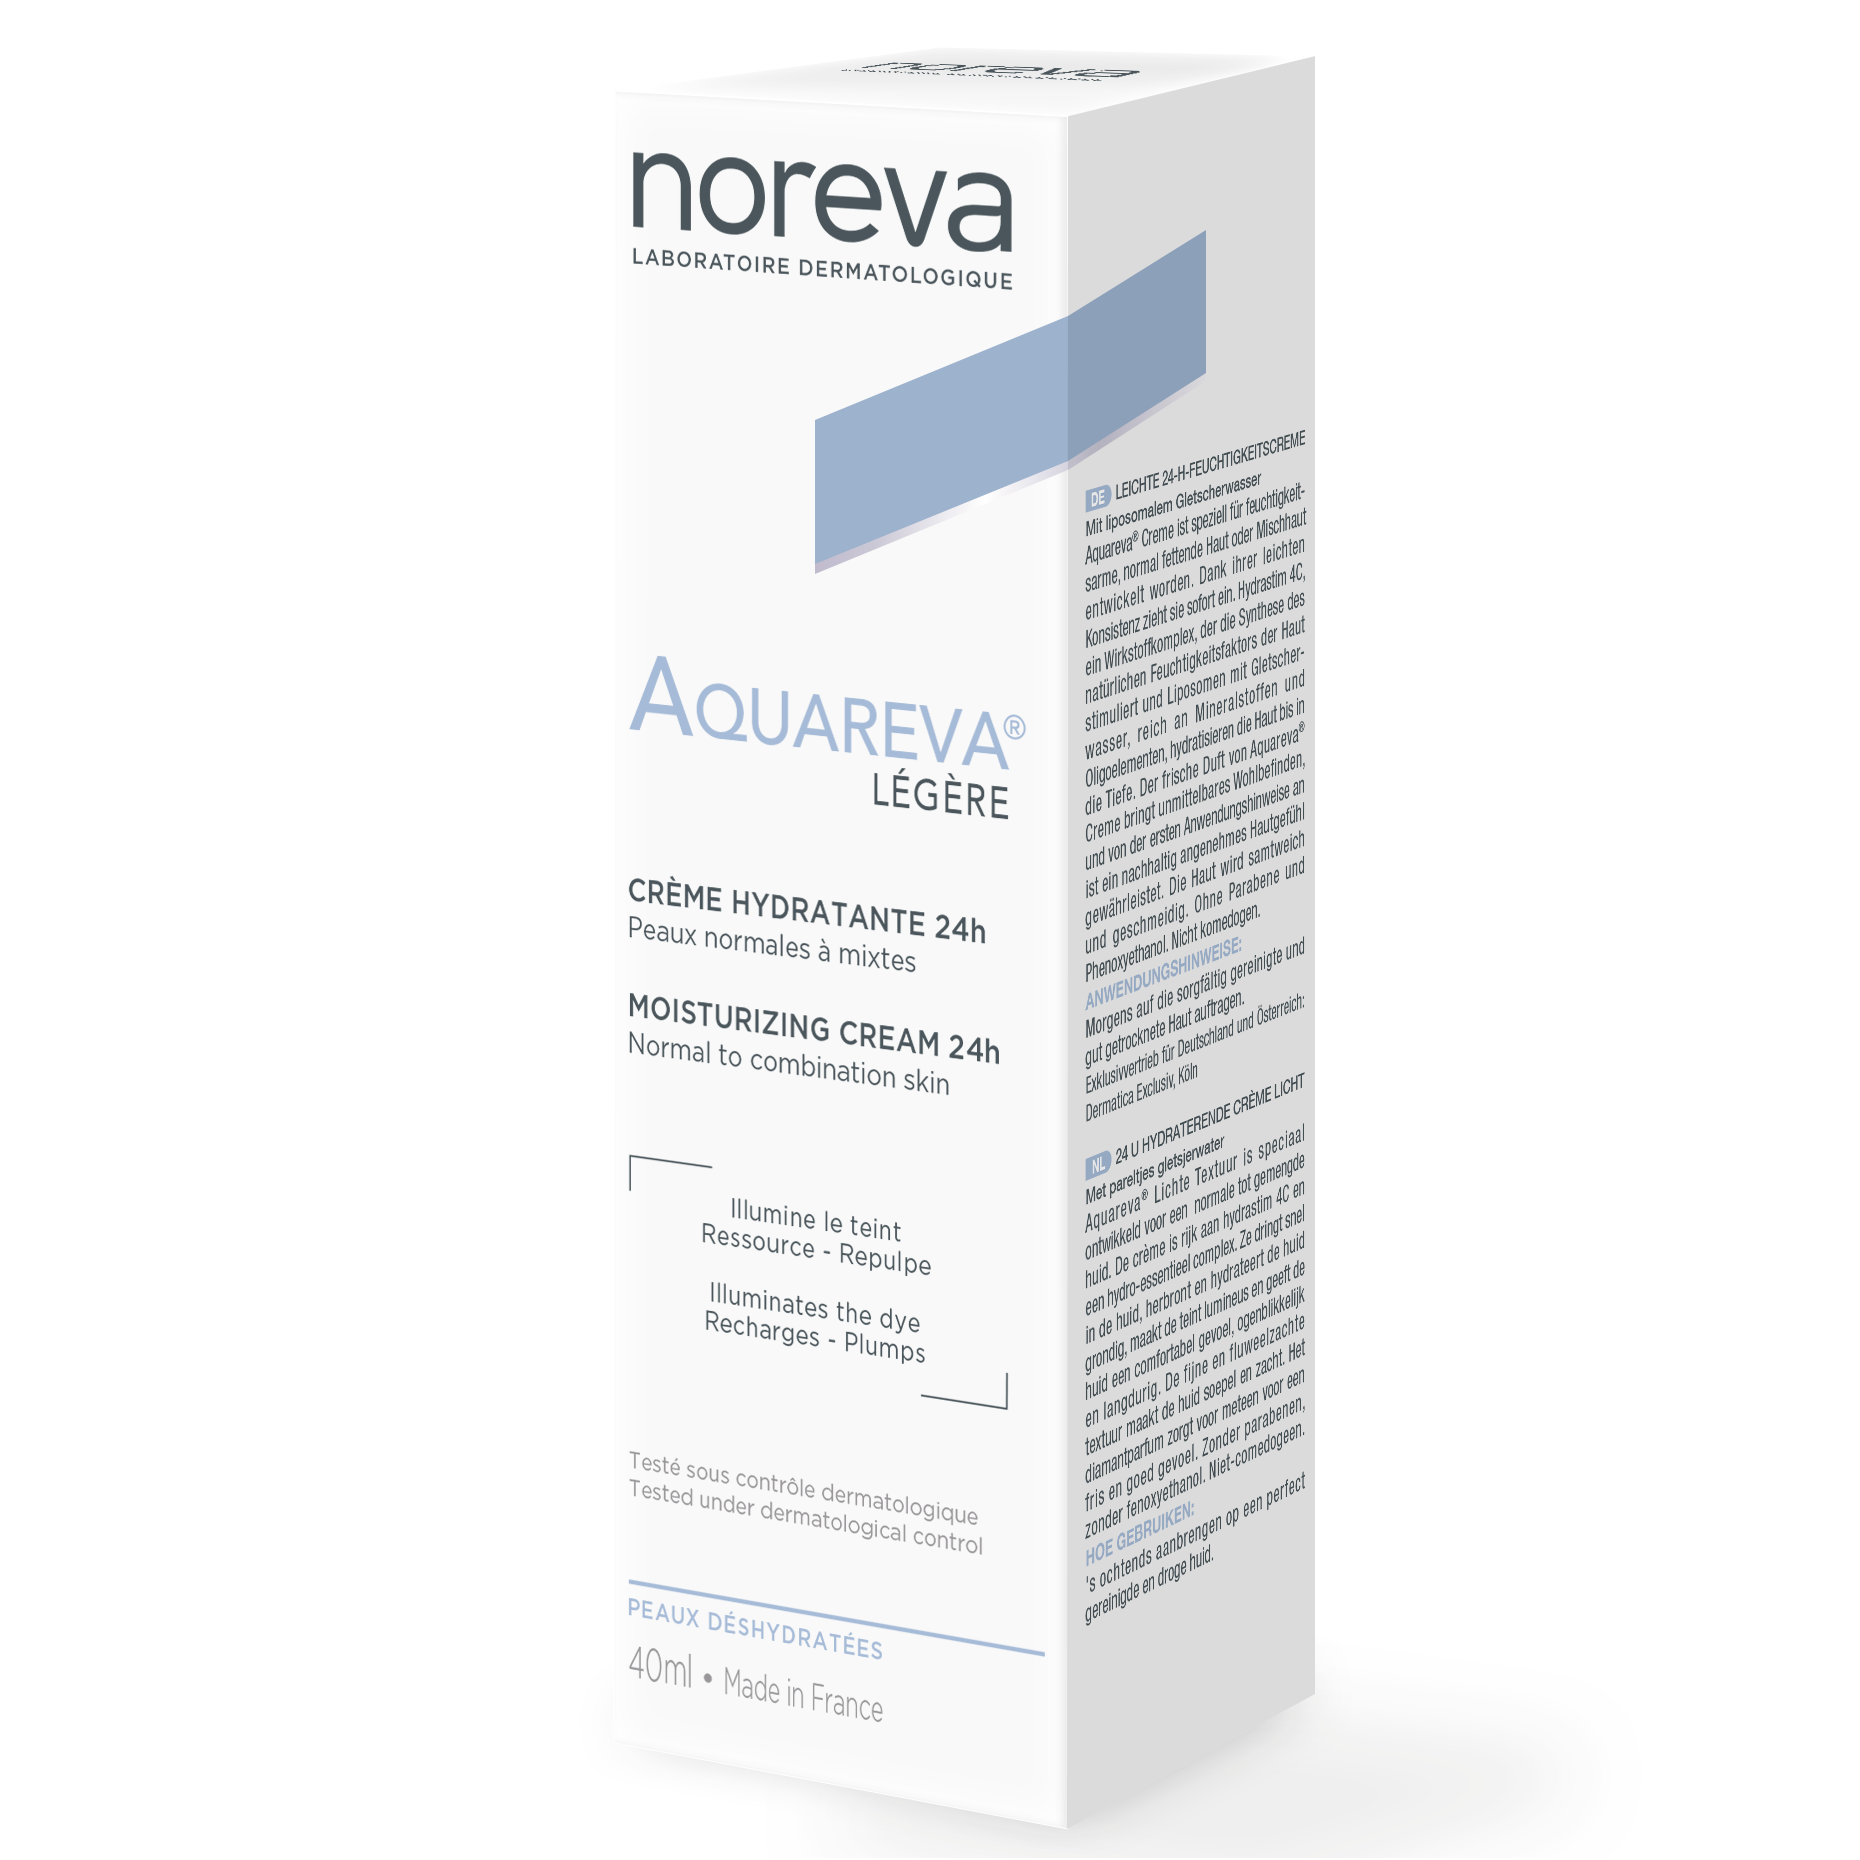 Увлажняющий крем для лица Noreva Aquareva 24h, легкий, 40 мл (P01067) - фото 2